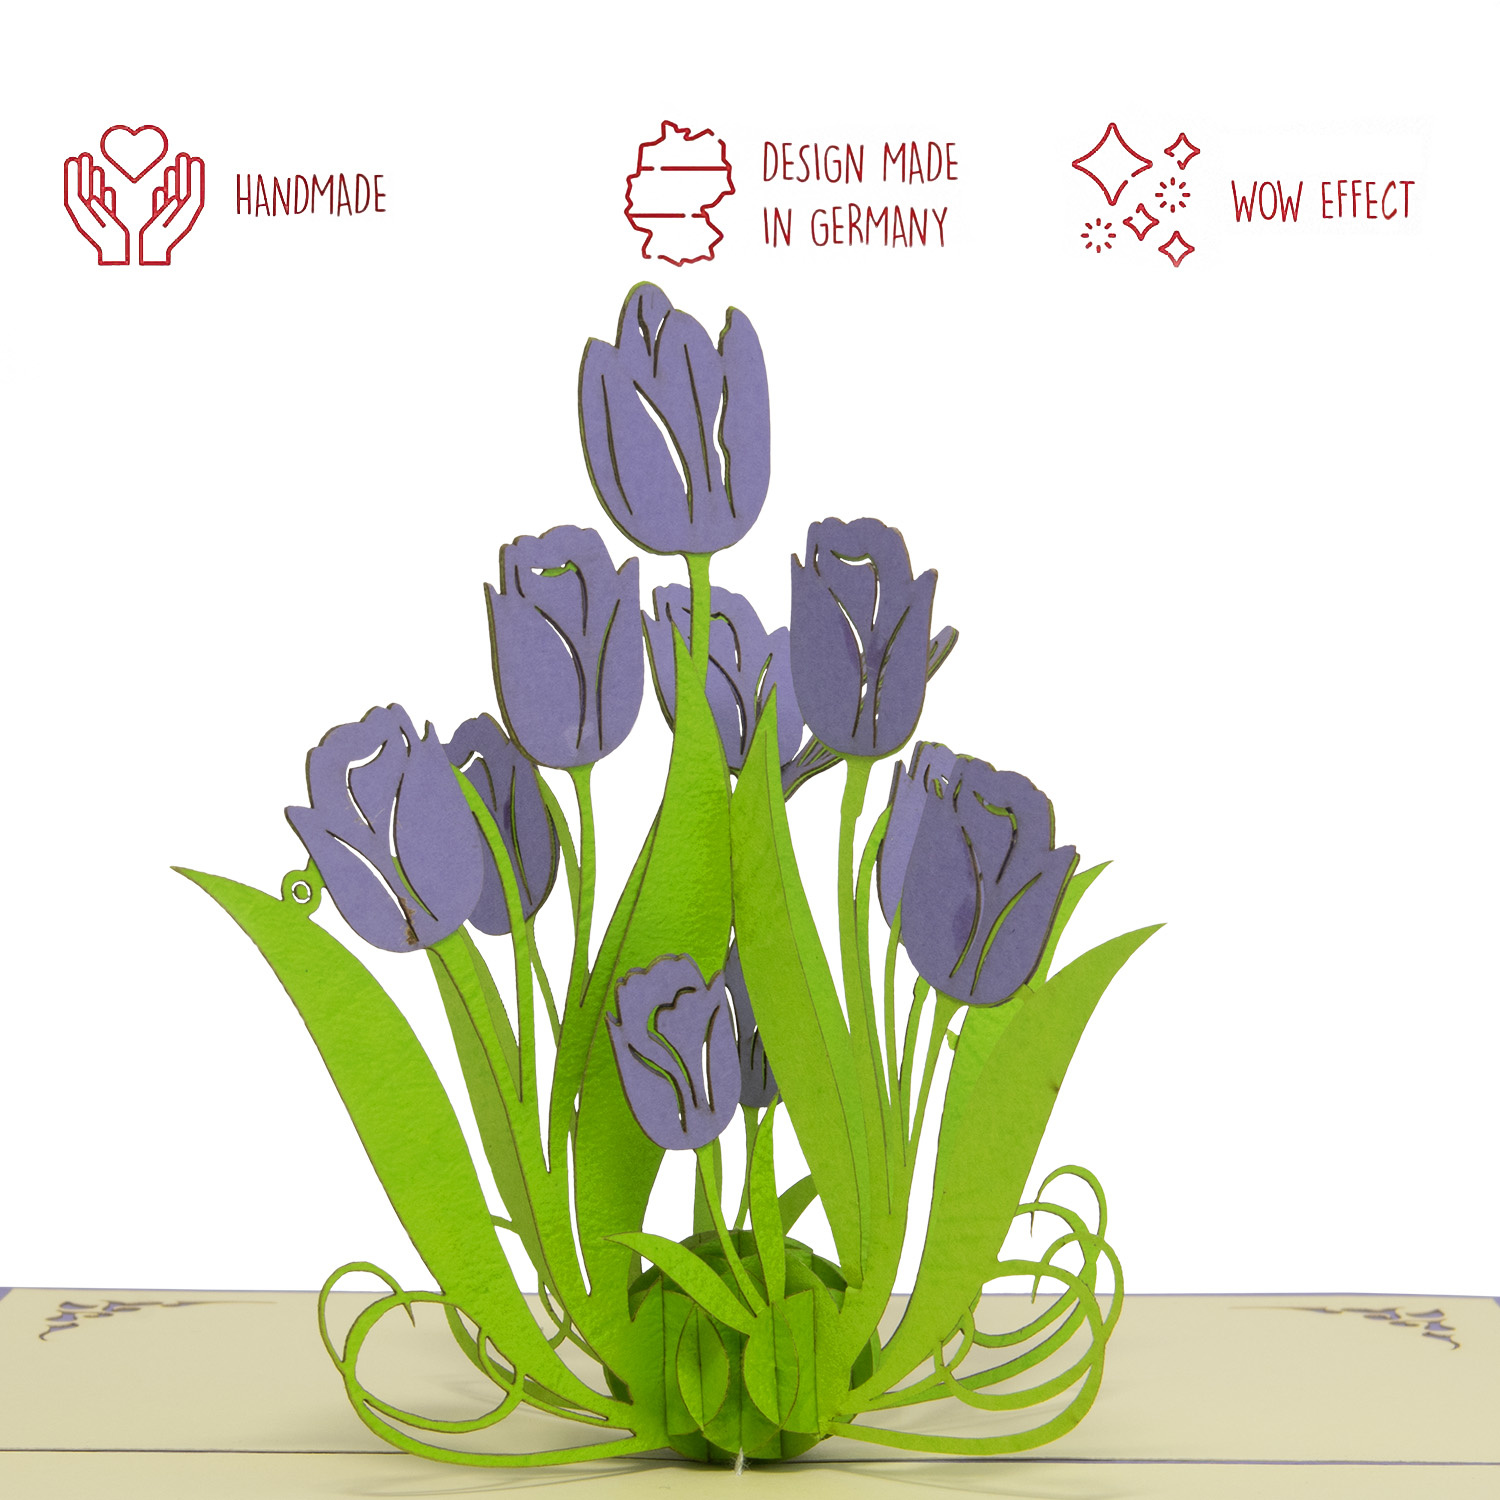 LINPOPUP Pop Up 3D Karte, Grußkarte Blumen, Geburtstagskarte, Blumenkarten, Glückwunschkarte, Muttertagskarte, Tulpen, Lila, LIN17667, LINPopUp®, N390